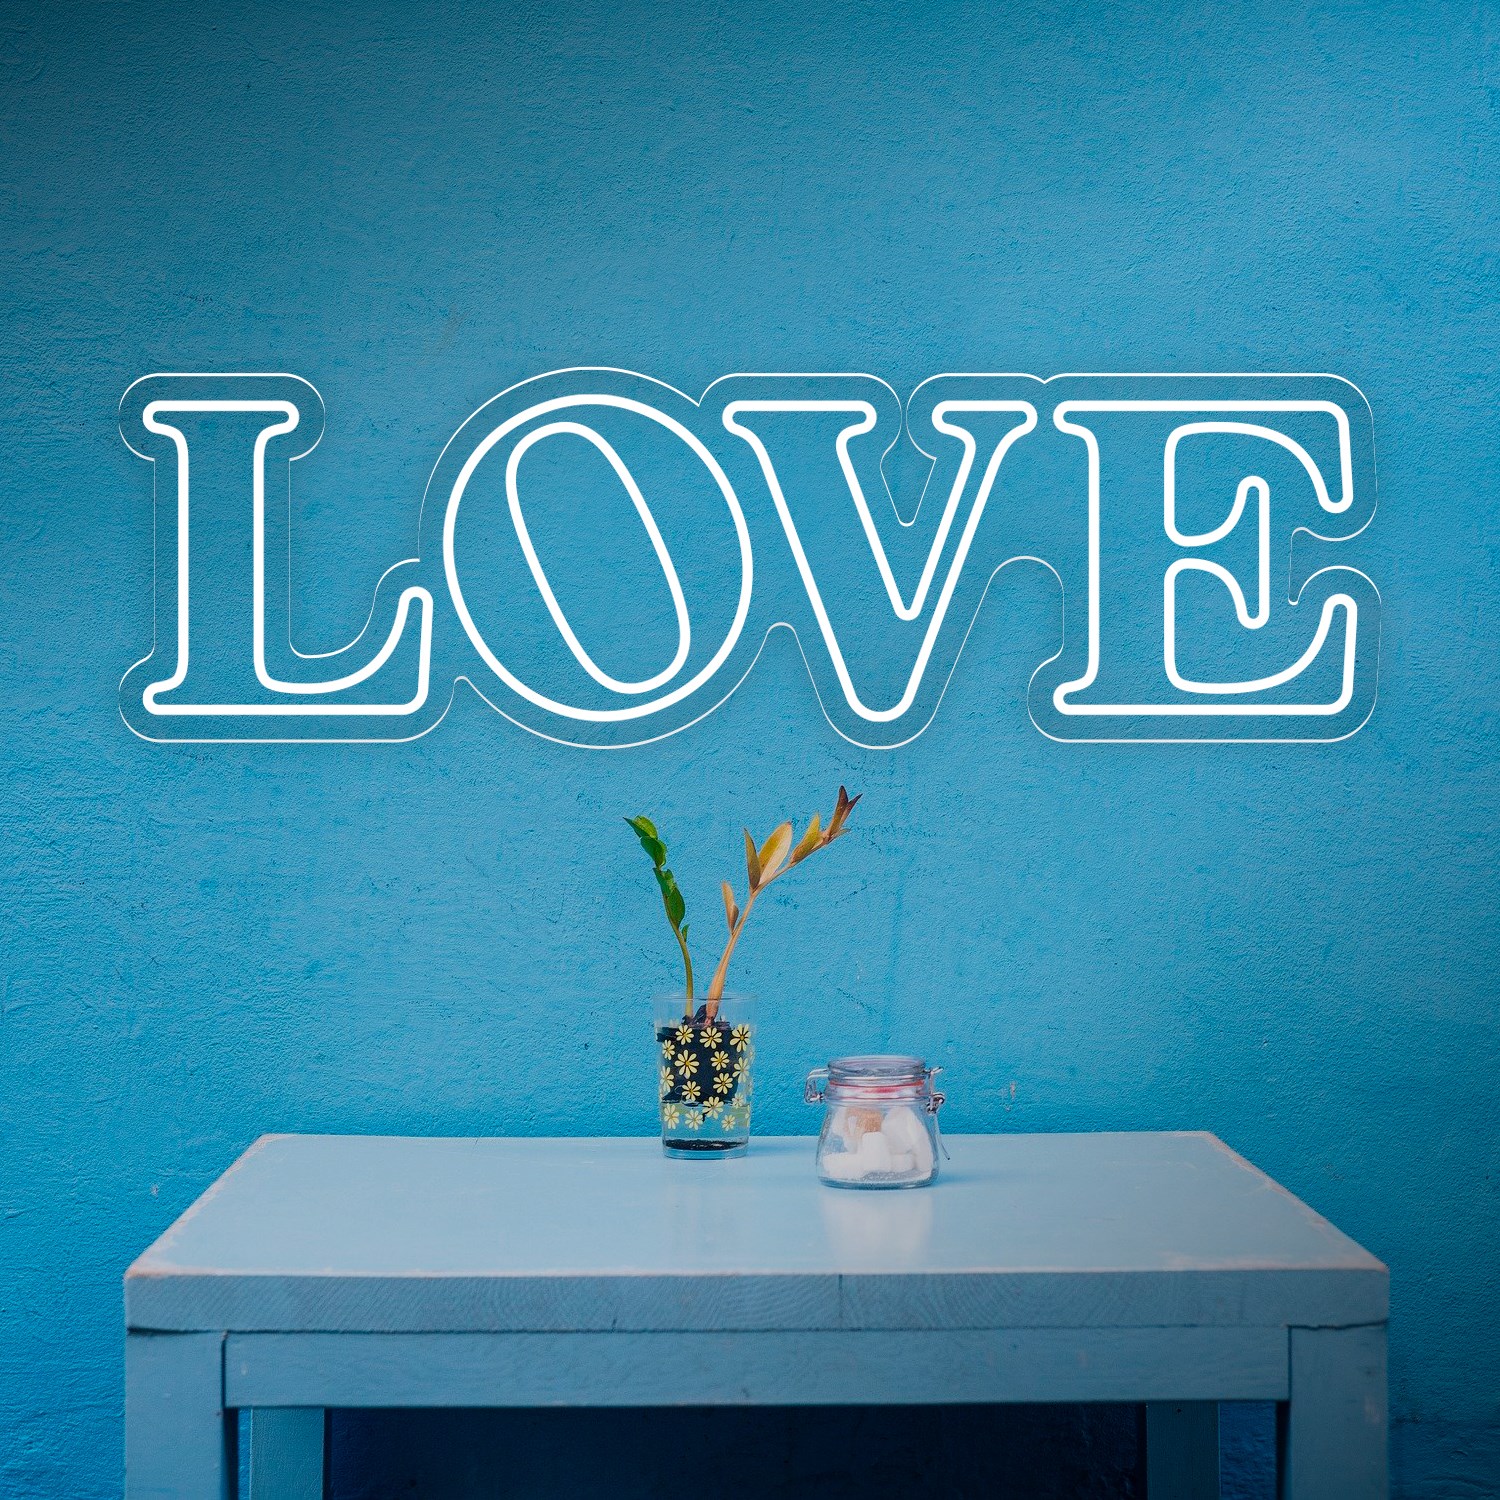 Imagen de Low Cost "Love" Neon Sign